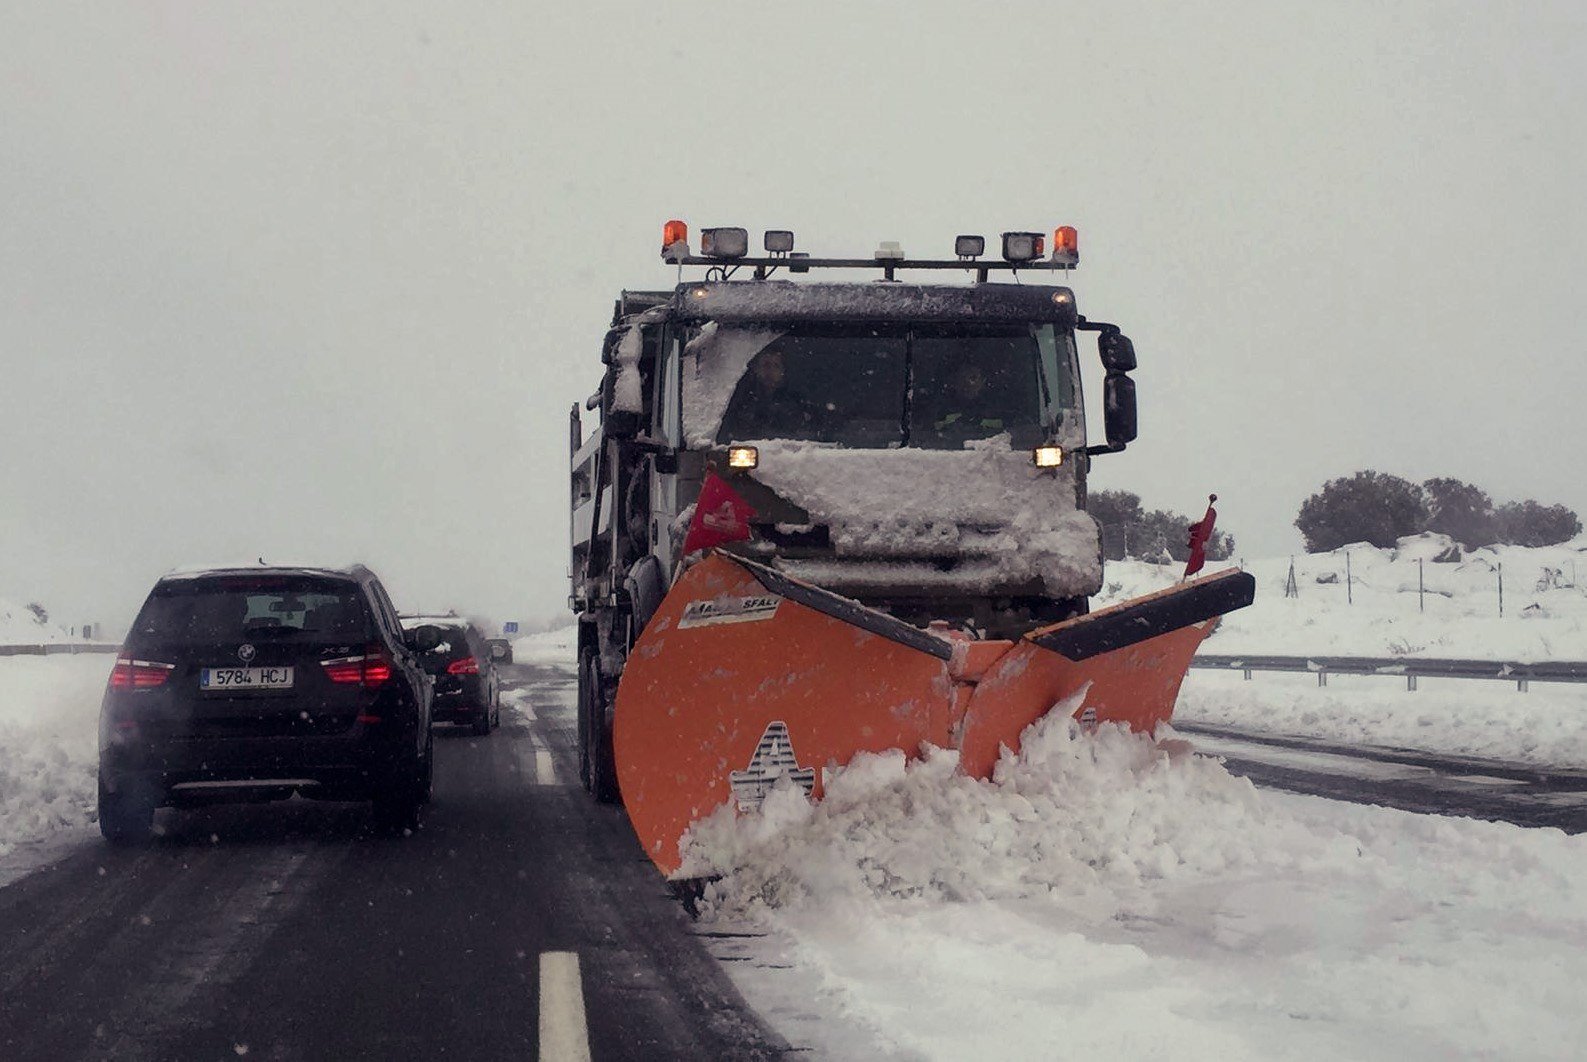 La neu deixa milers de persones atrapades a les carreteres del centre d'Espanya